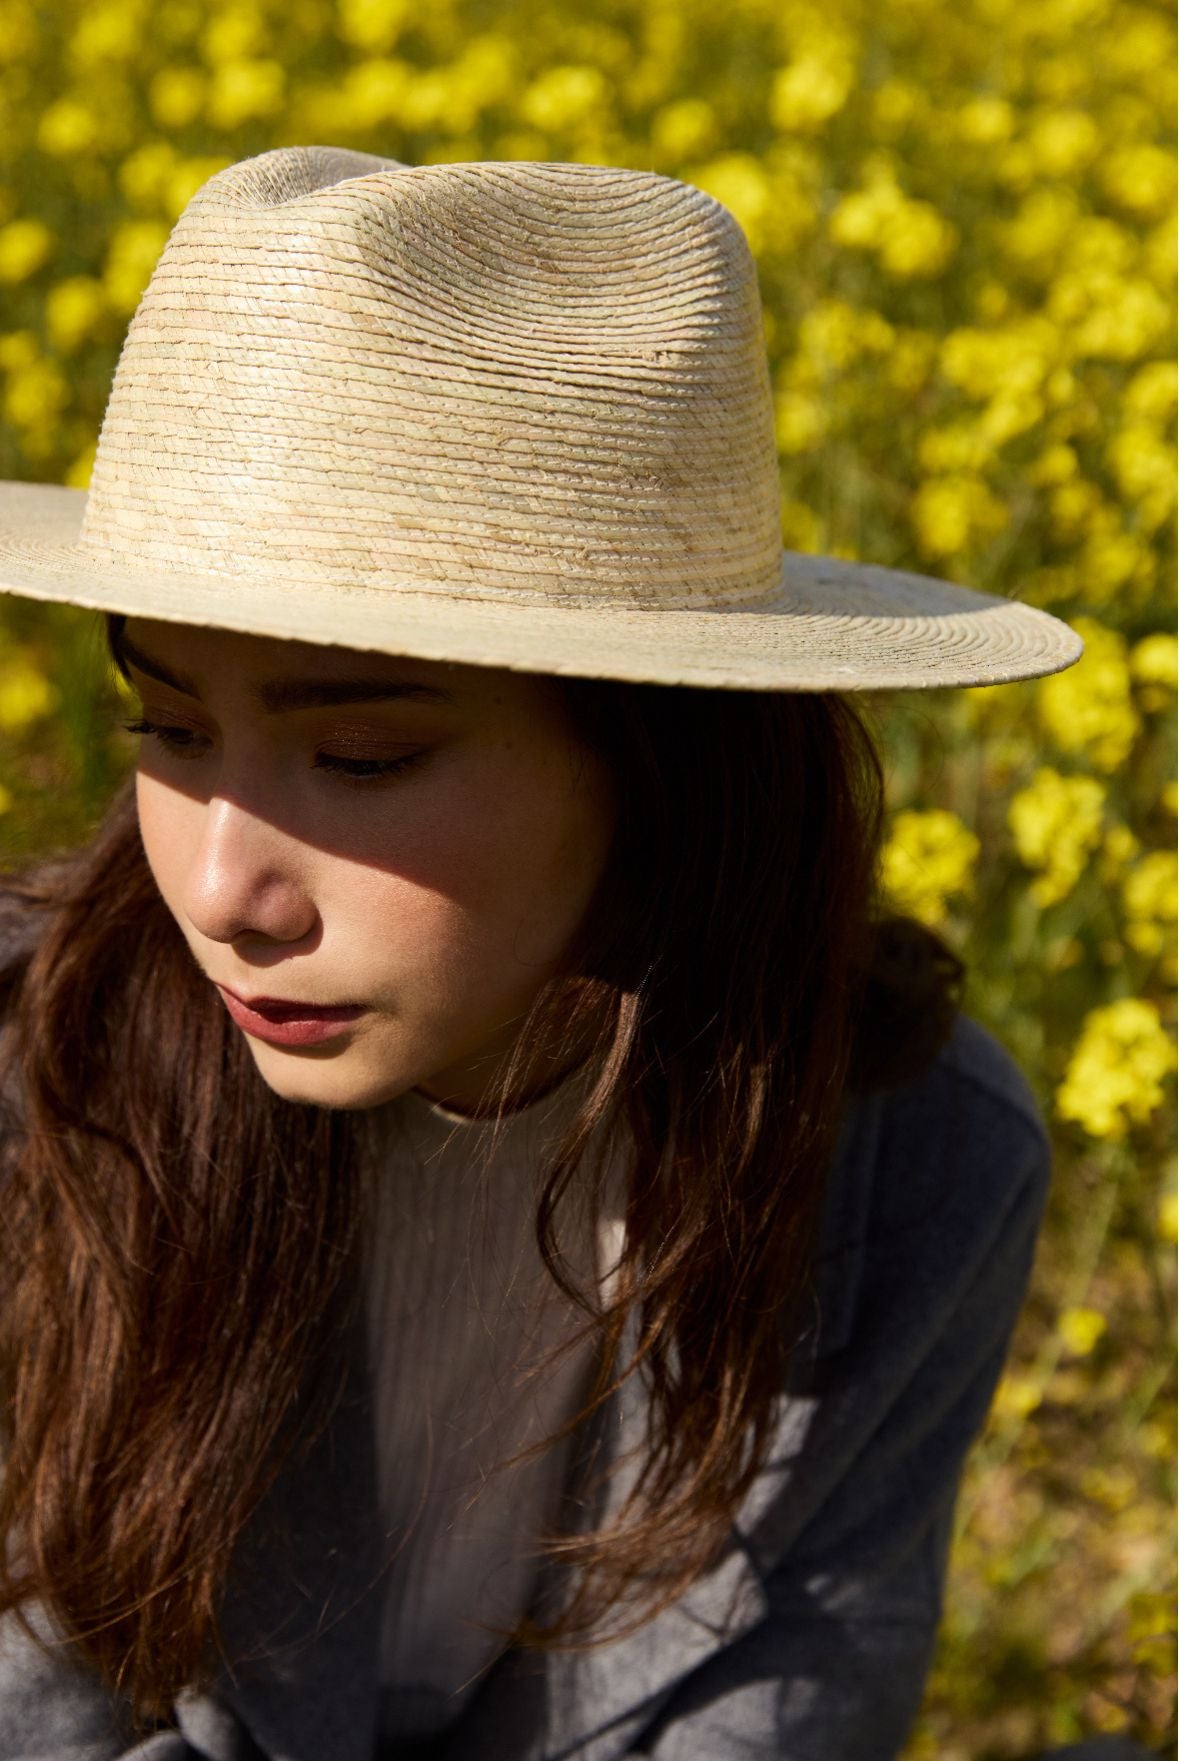 femme en chapeau et manteau se tenant dans un champ de colza